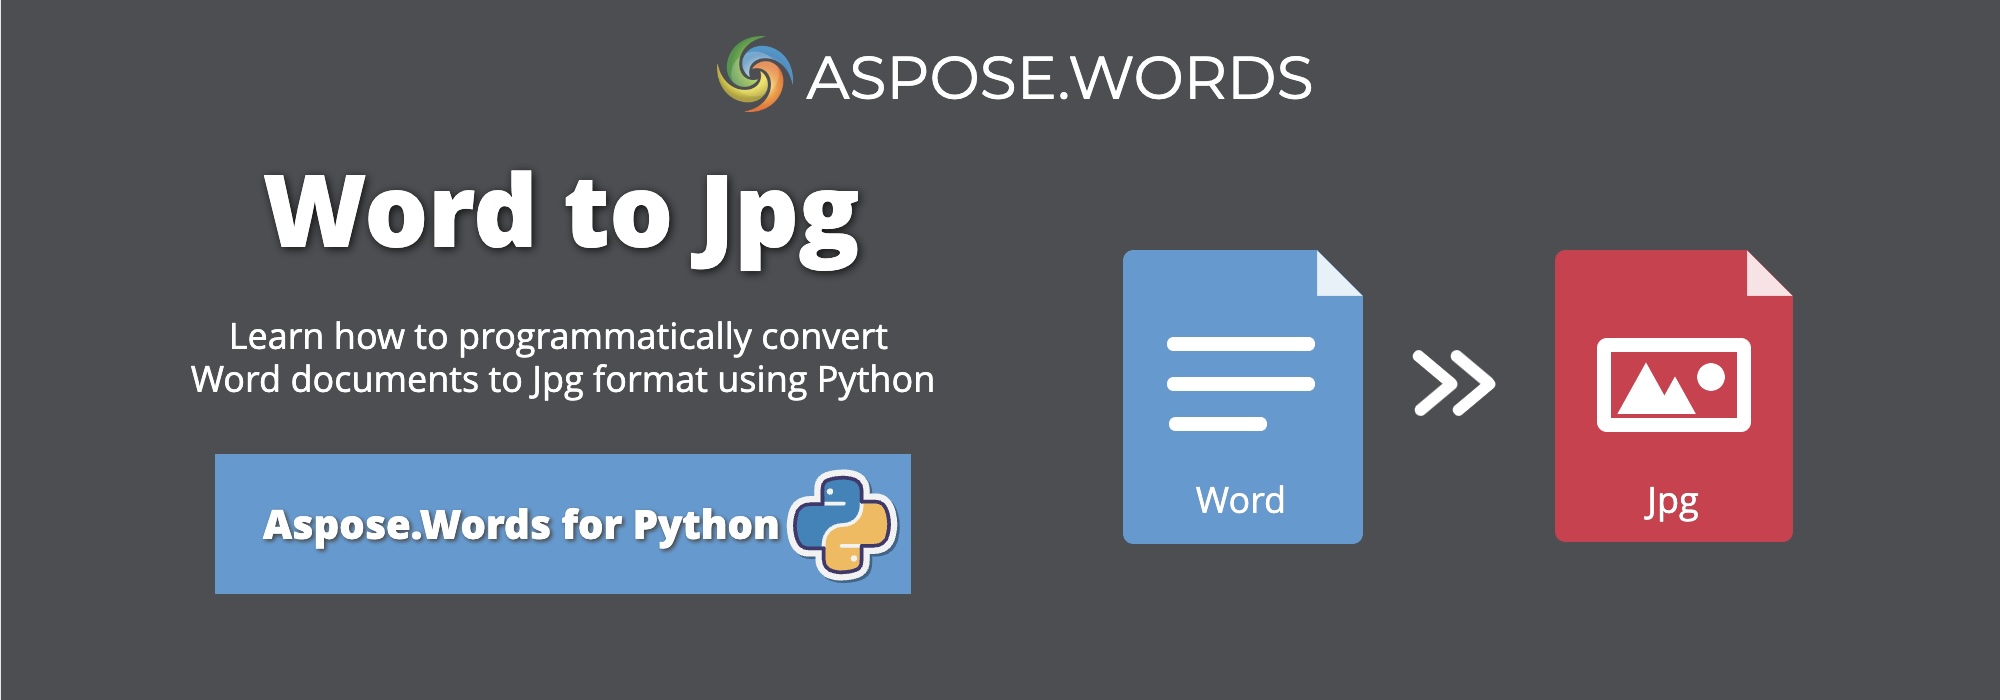 Convertir Word a JPG Python | Convertir DOCX a JPG Python